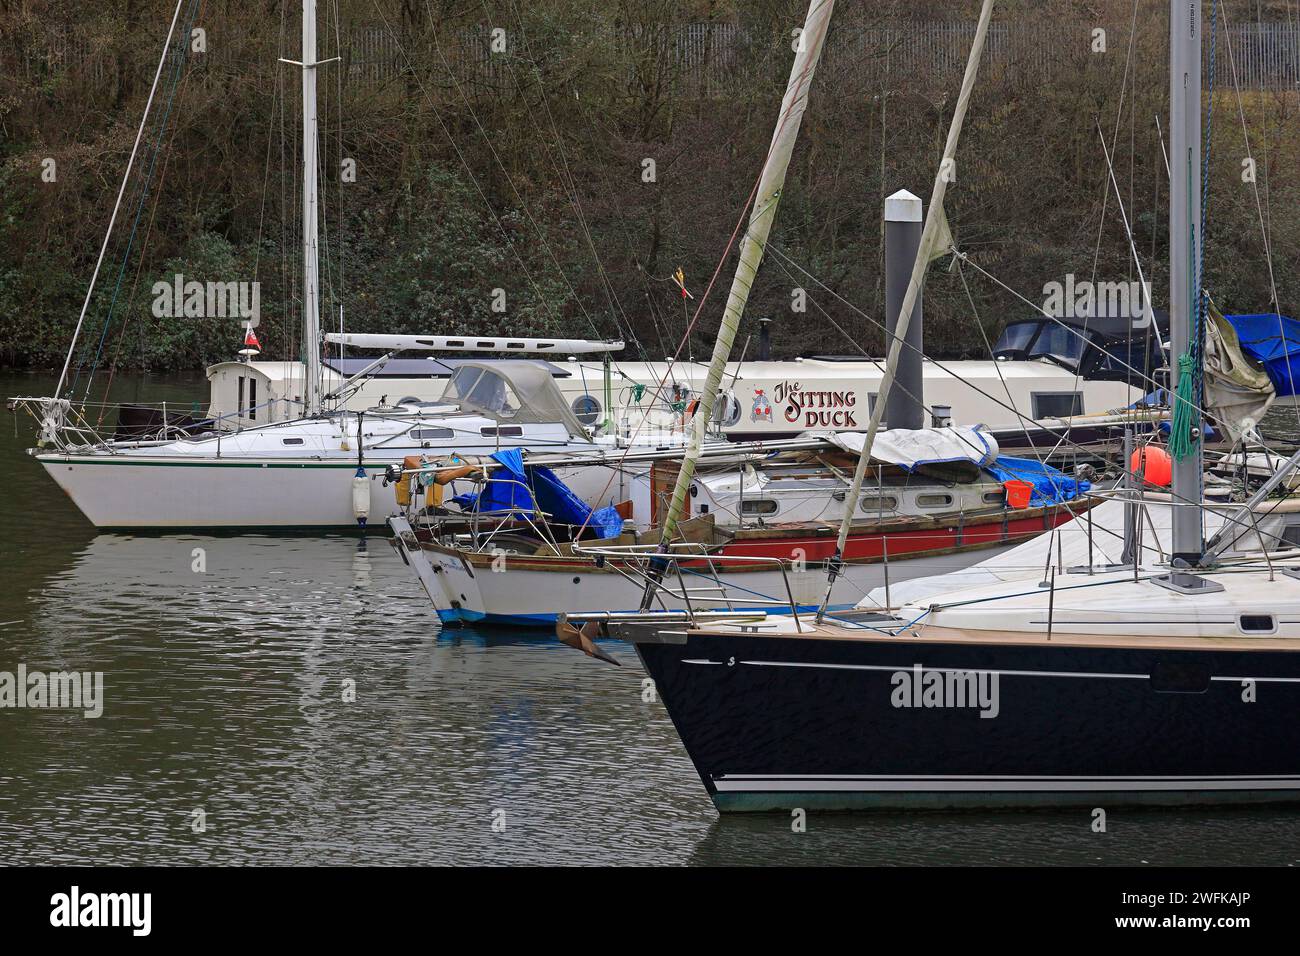 La barge Sitting Duck / Nétrowboat et autres bateaux / yachts amarrés sur la rivière Ely, près de Penarth Marina. Prise hiver 2024, janvier Banque D'Images